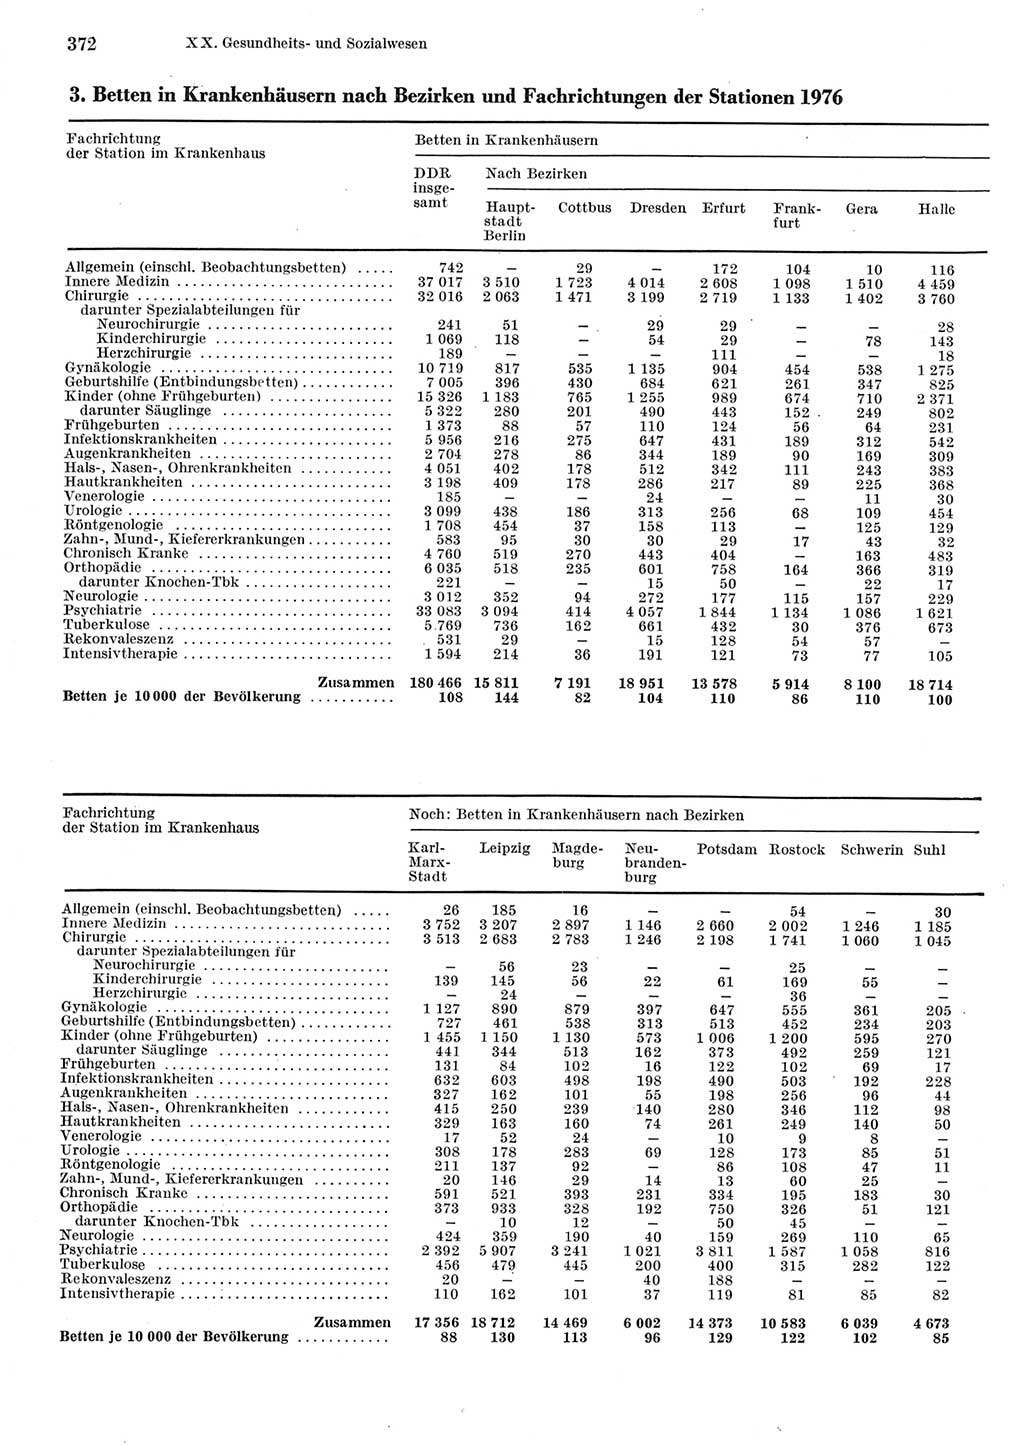 Statistisches Jahrbuch der Deutschen Demokratischen Republik (DDR) 1977, Seite 372 (Stat. Jb. DDR 1977, S. 372)